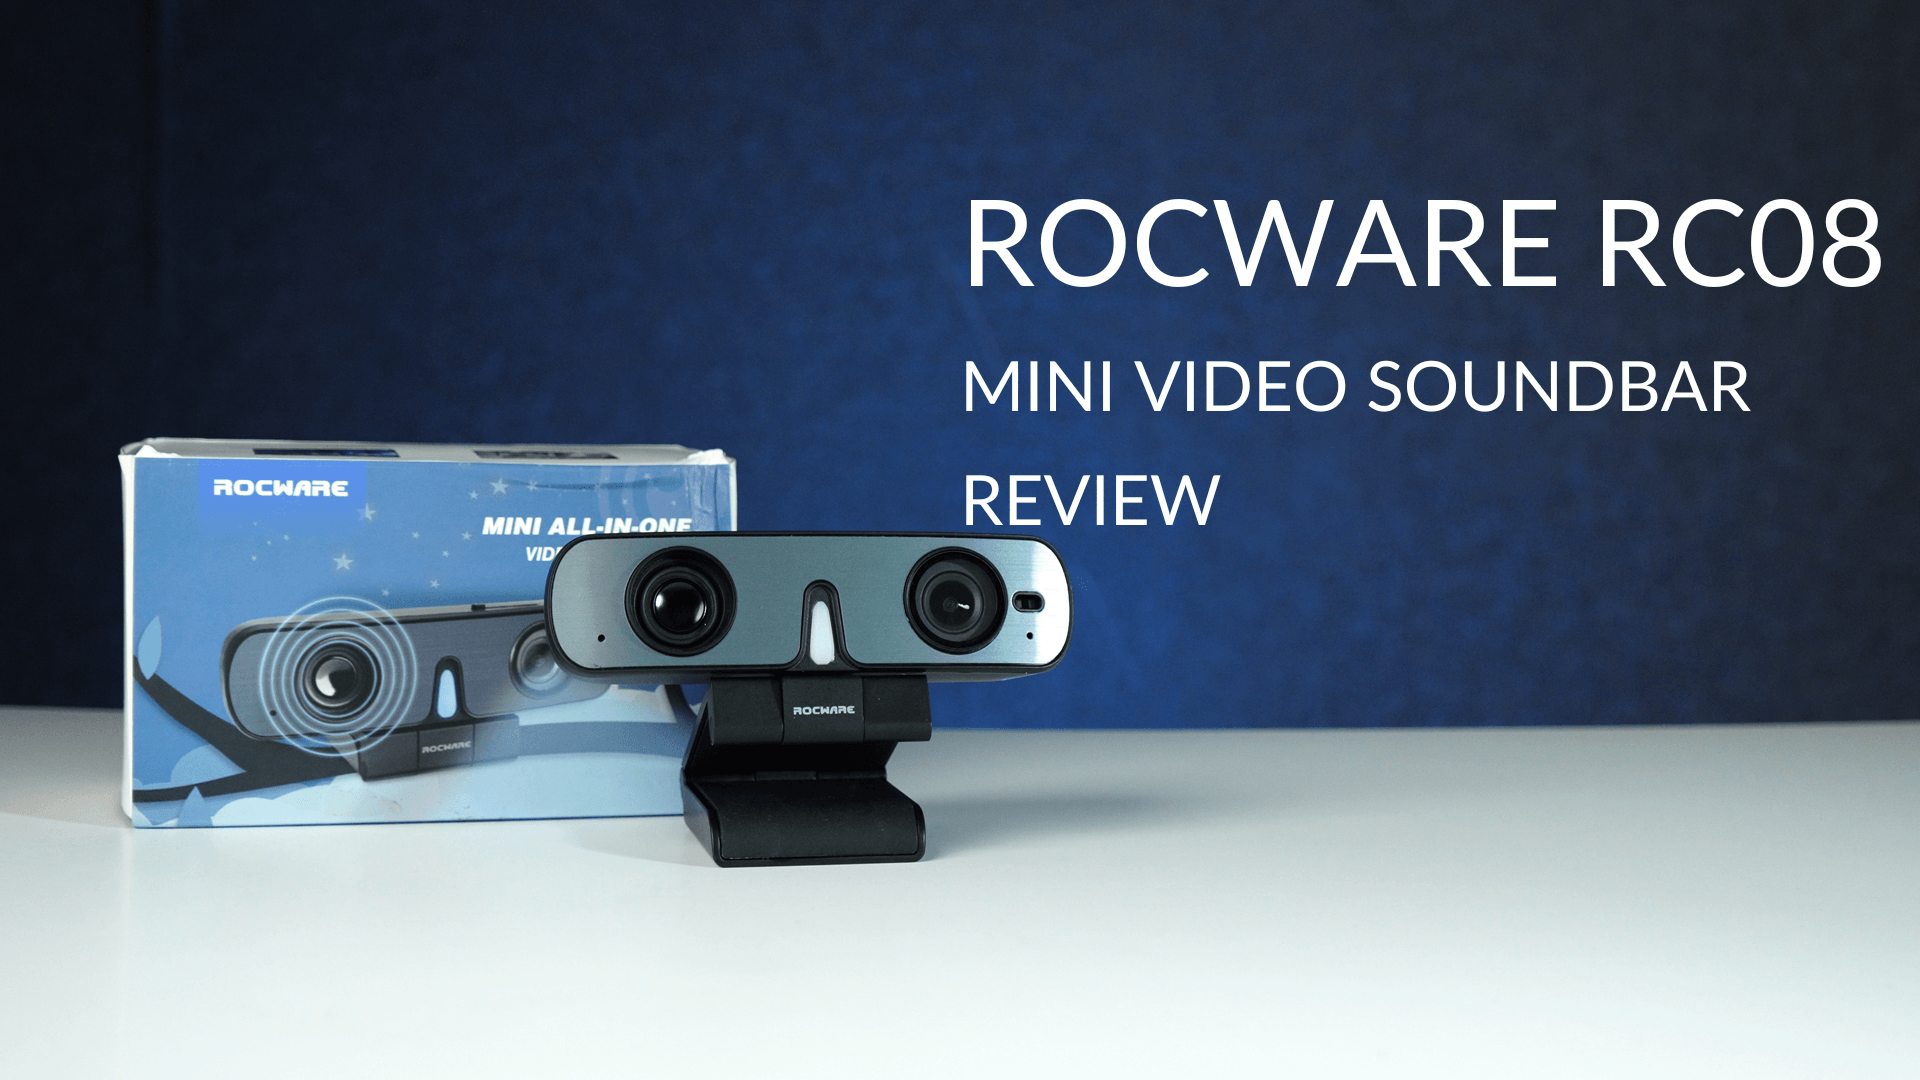 ROCWARERC08 Mini Video Soundbar Review